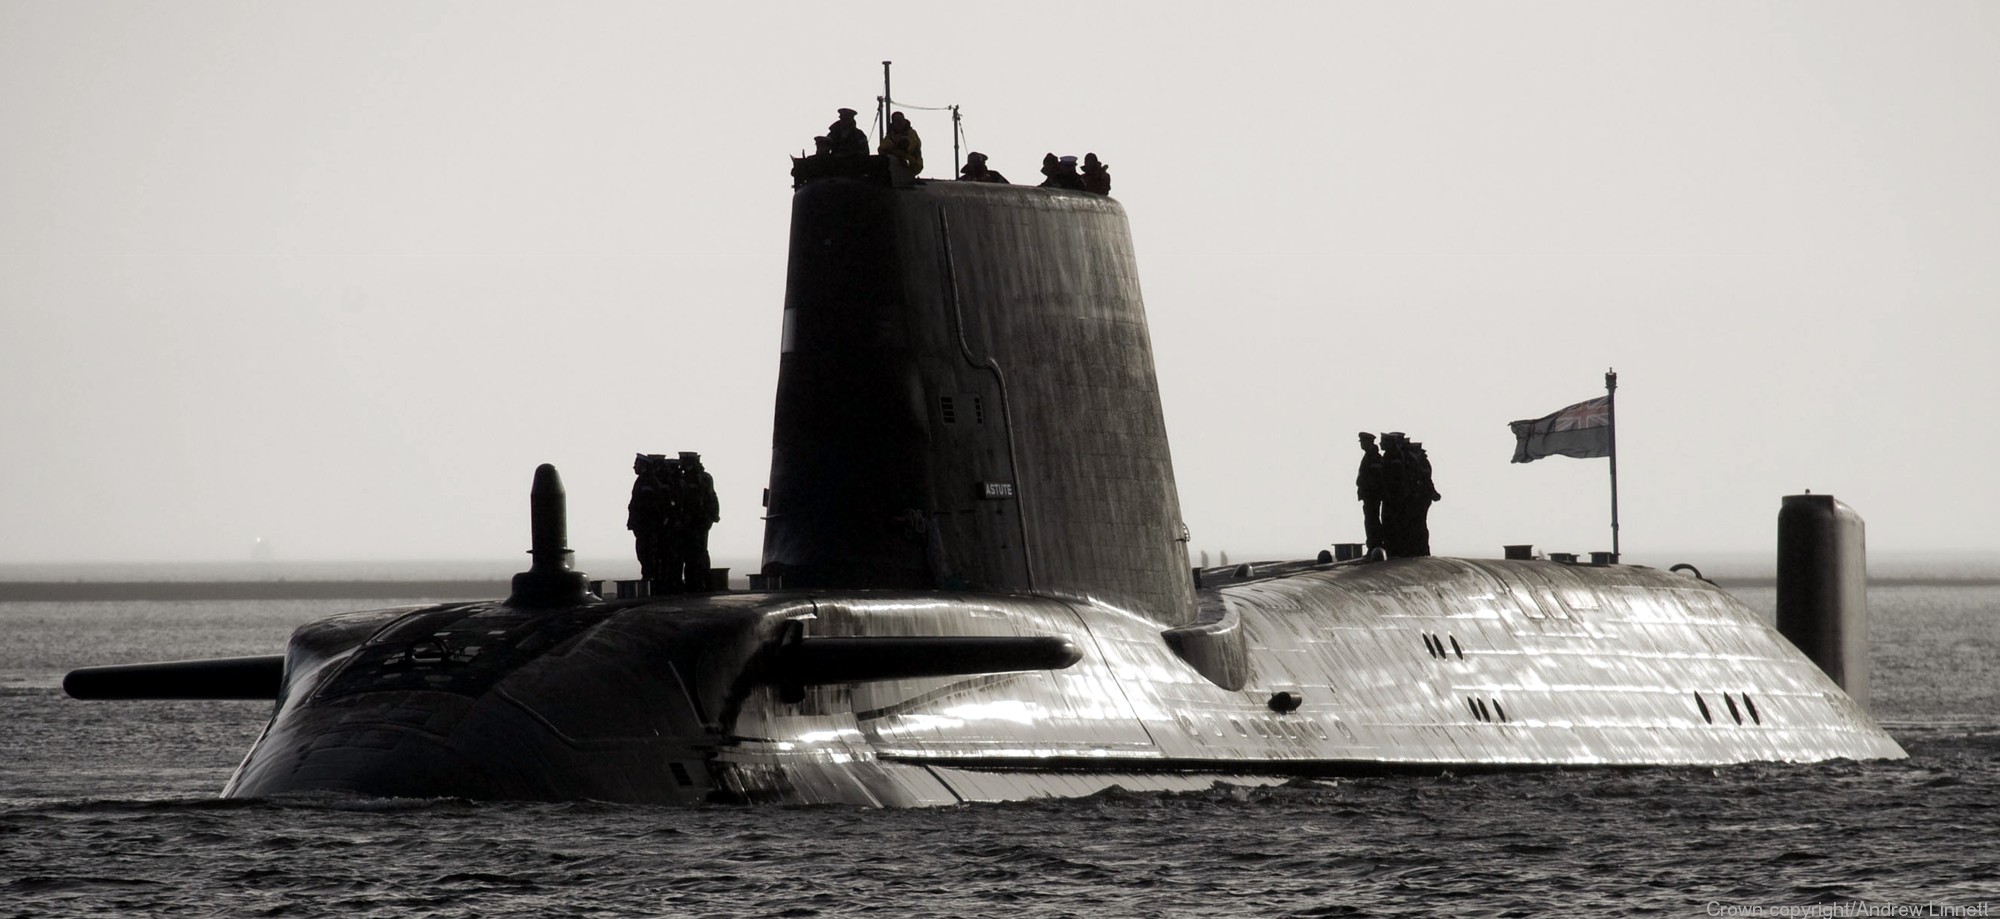 s119 hms astute s-119 attack submarine ssn hunter killer royal navy 14